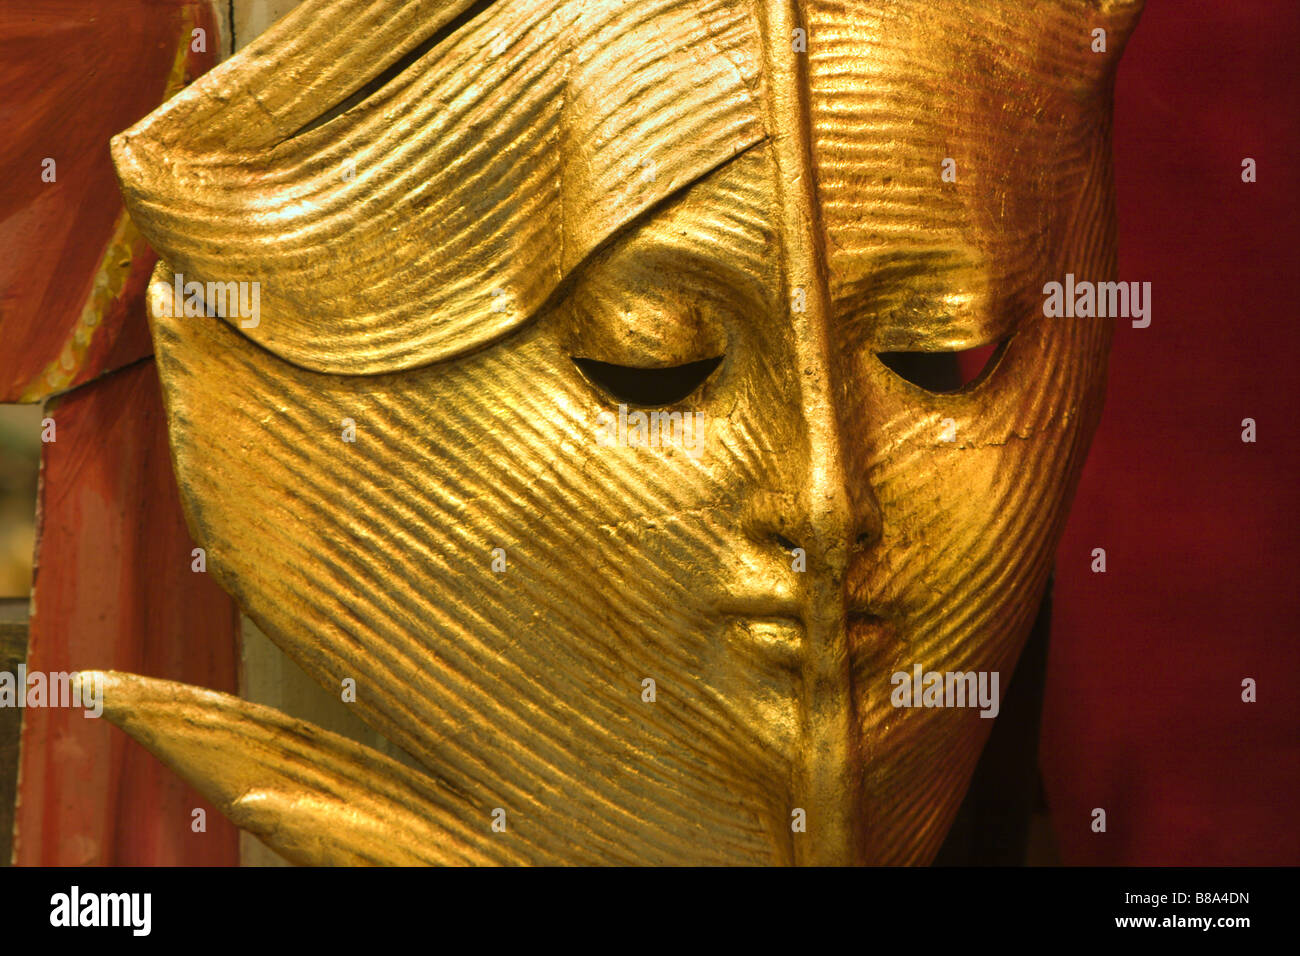 La feuille d'or - masque de Venise Banque D'Images